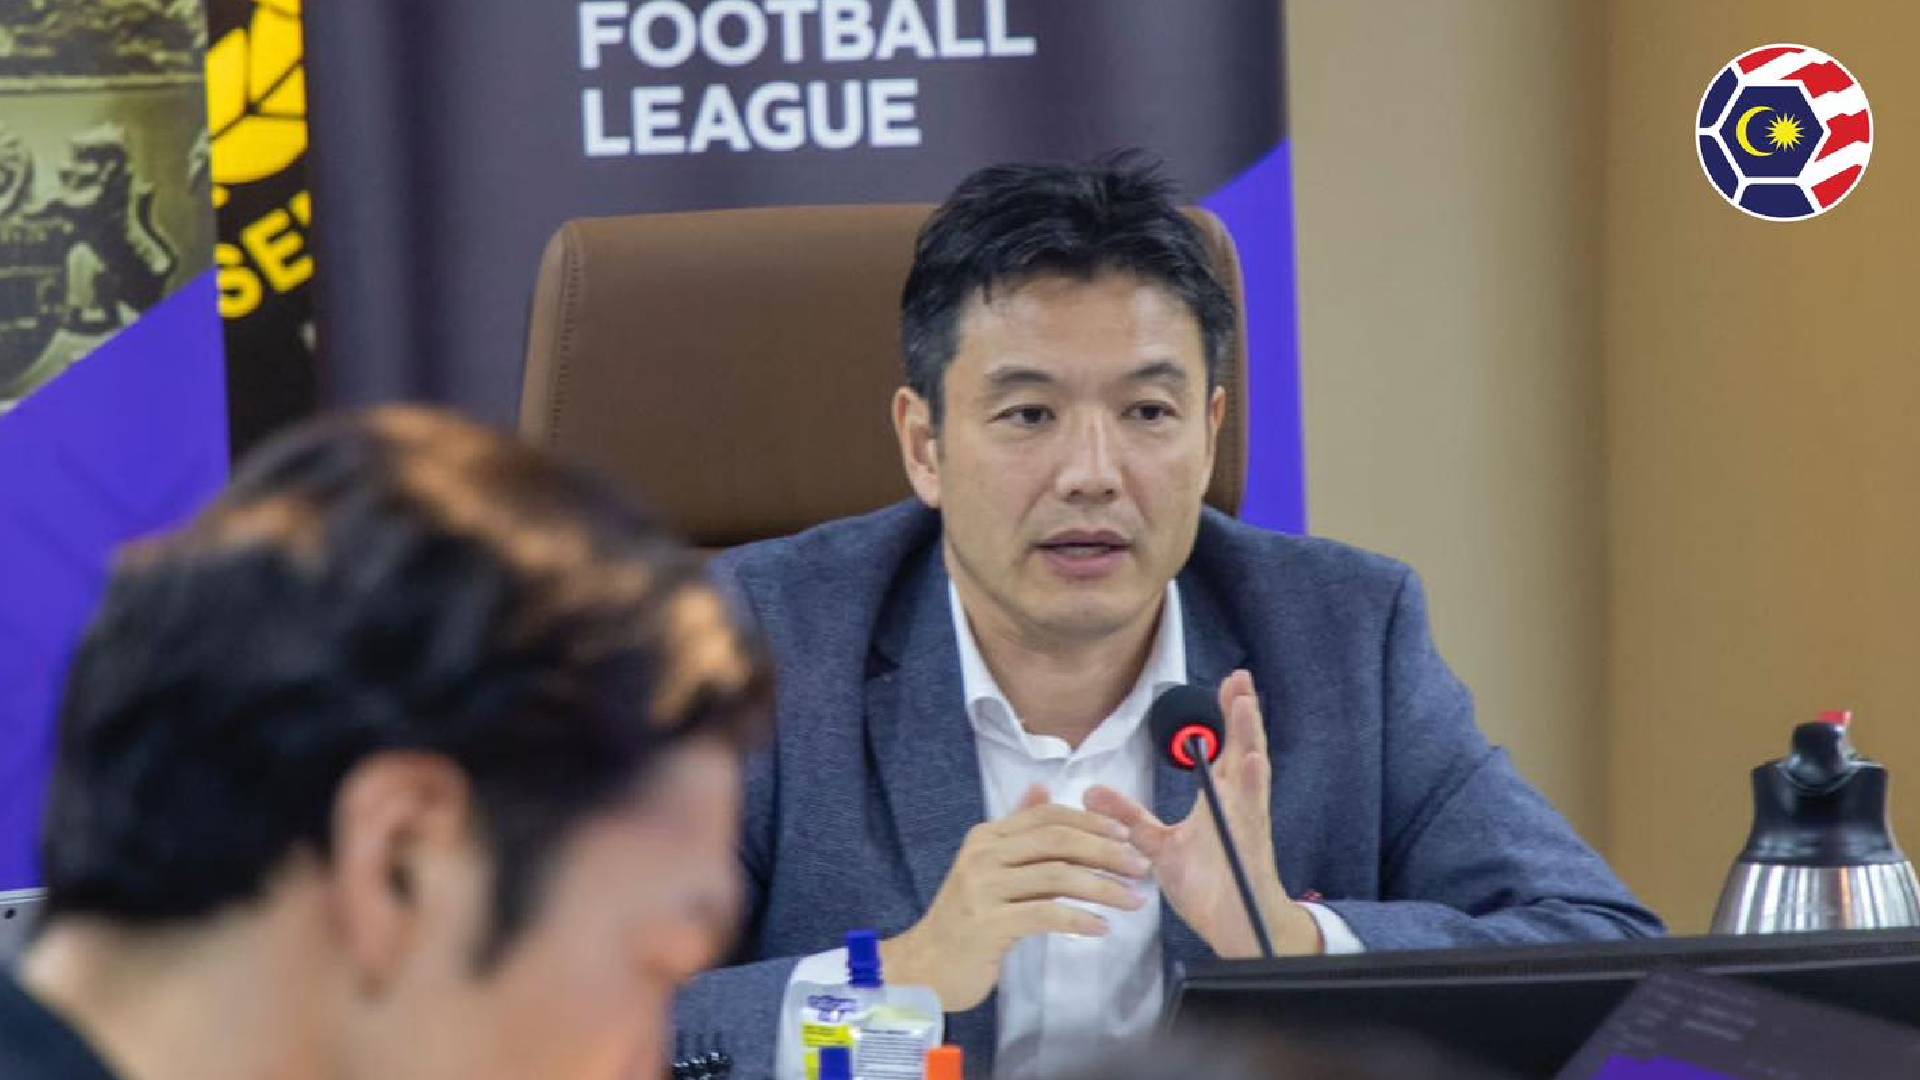 satoshi saito mfl "Kelab Liga Malaysia Semakin Berkembang" - Satoshi Saito